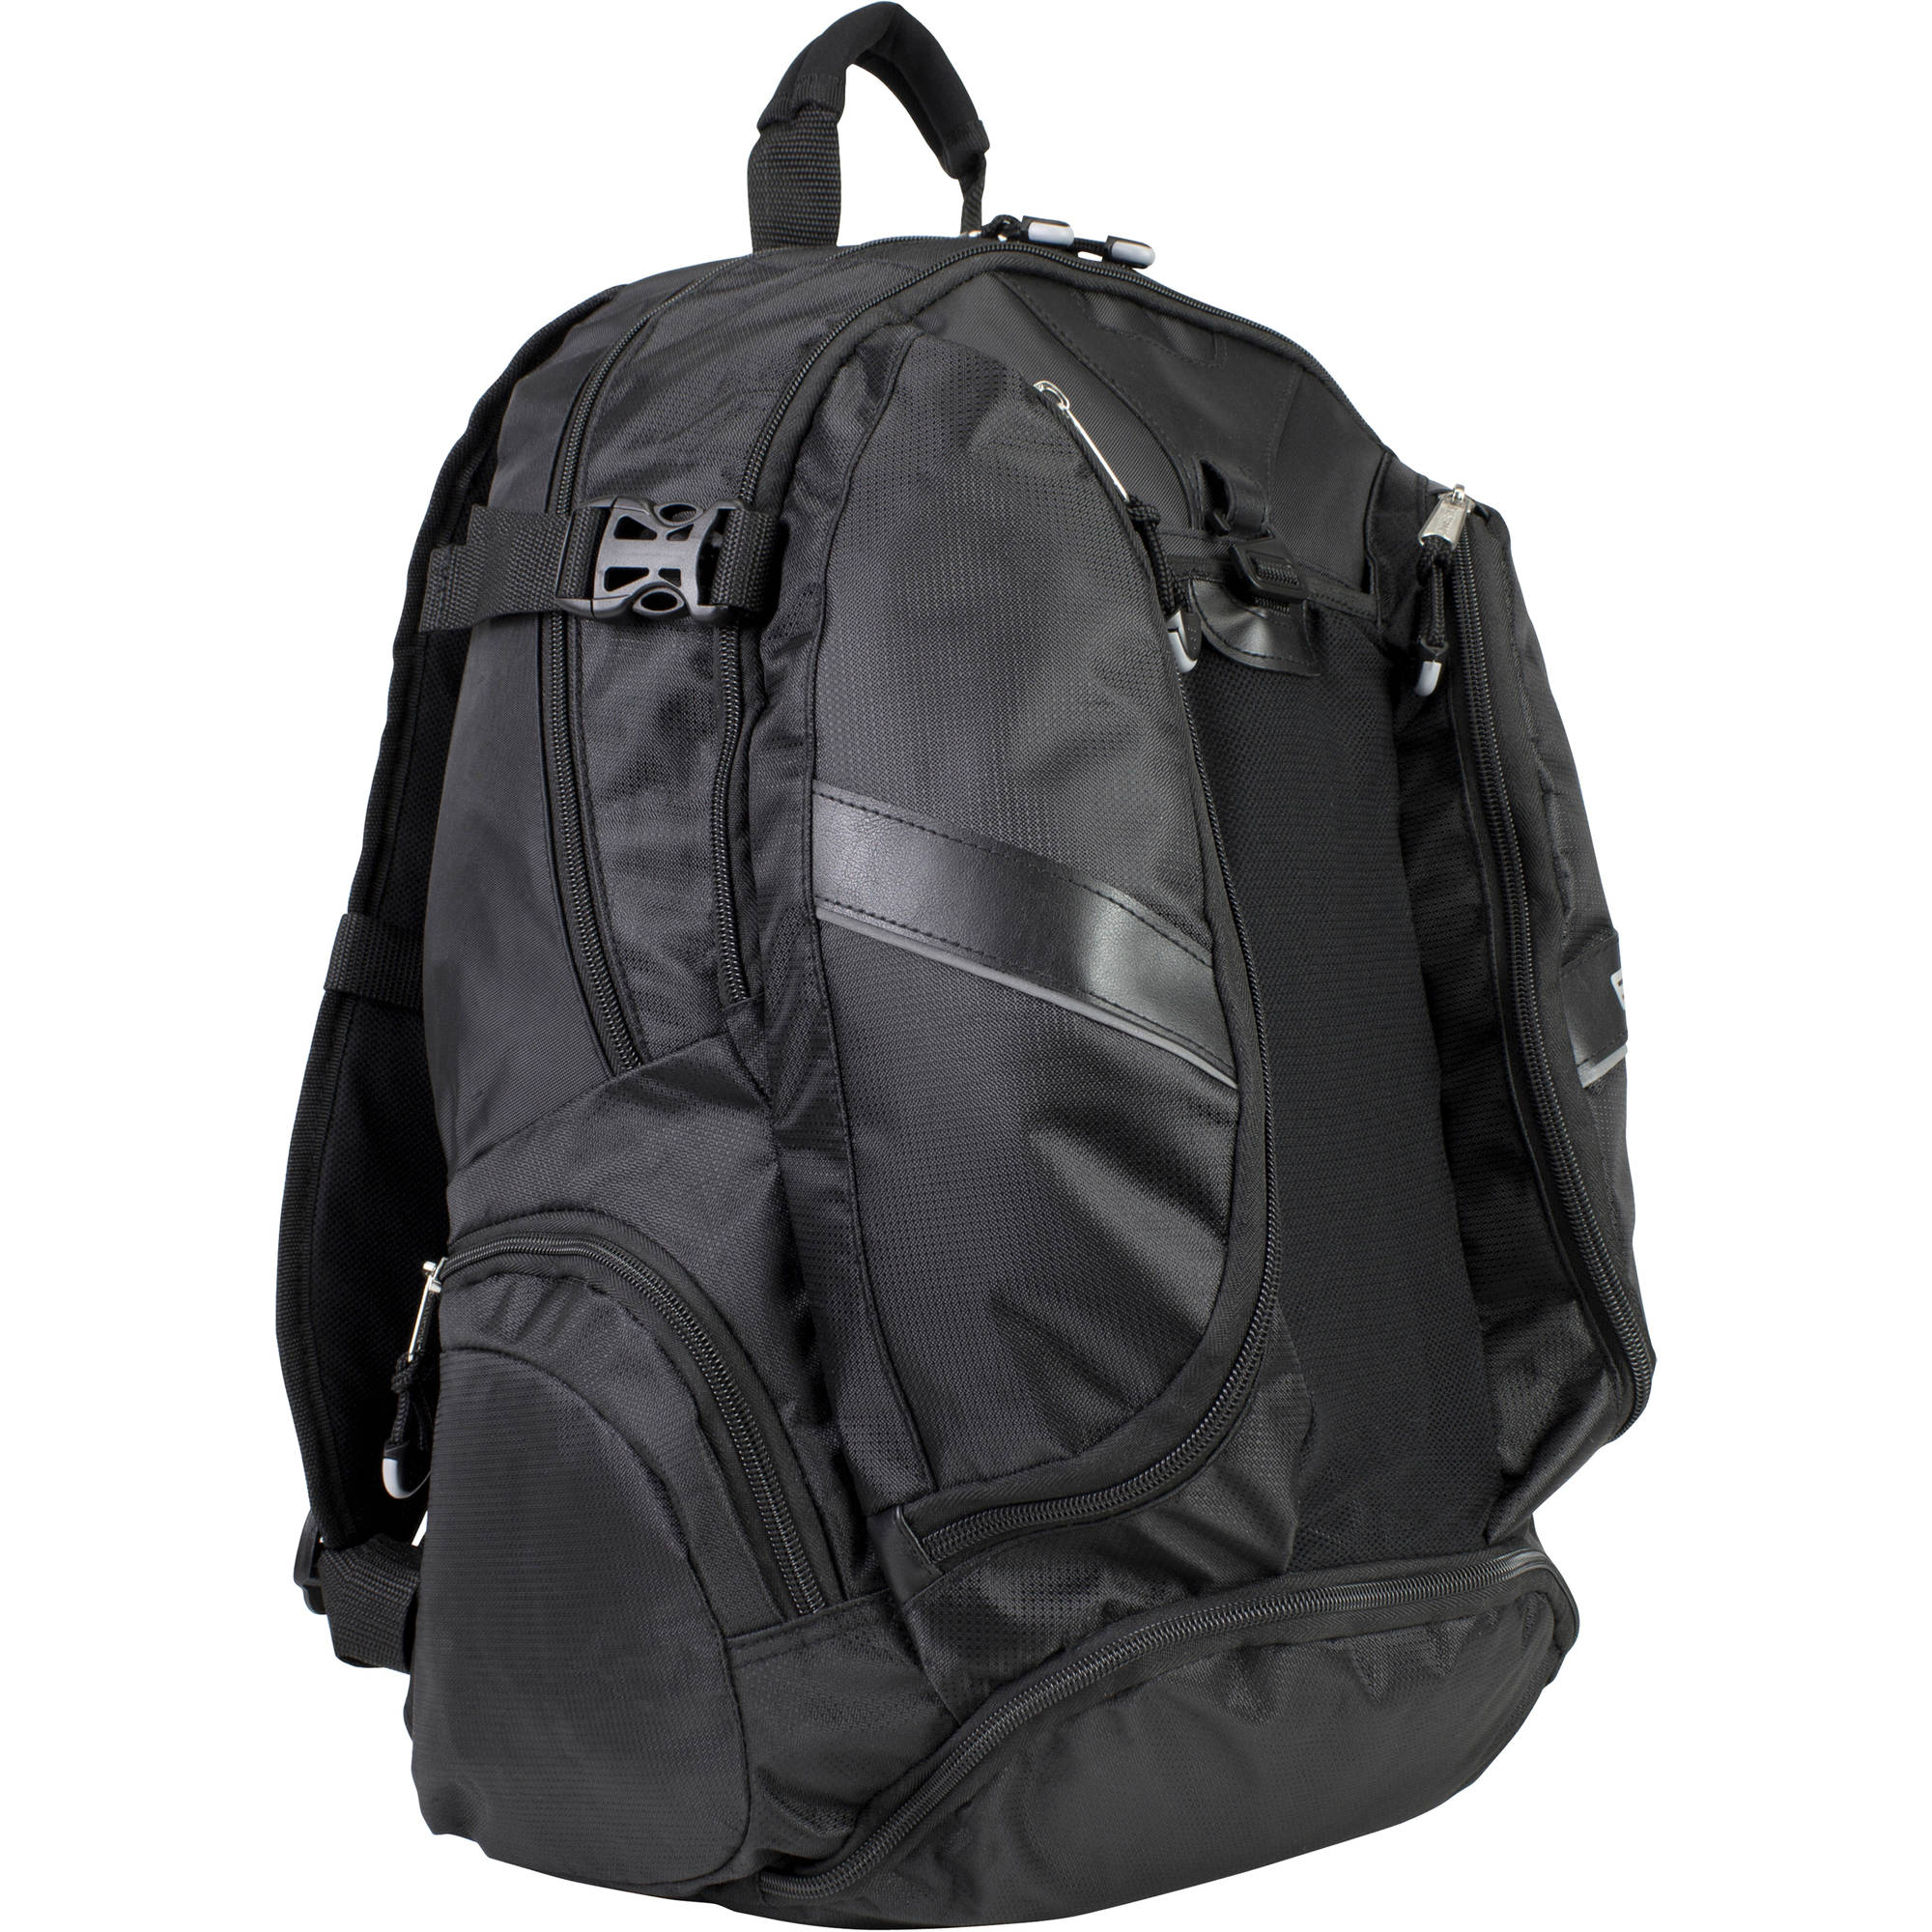 Laptop Backpack with Adjustable Padded Shoulder Straps - image 1 of 8